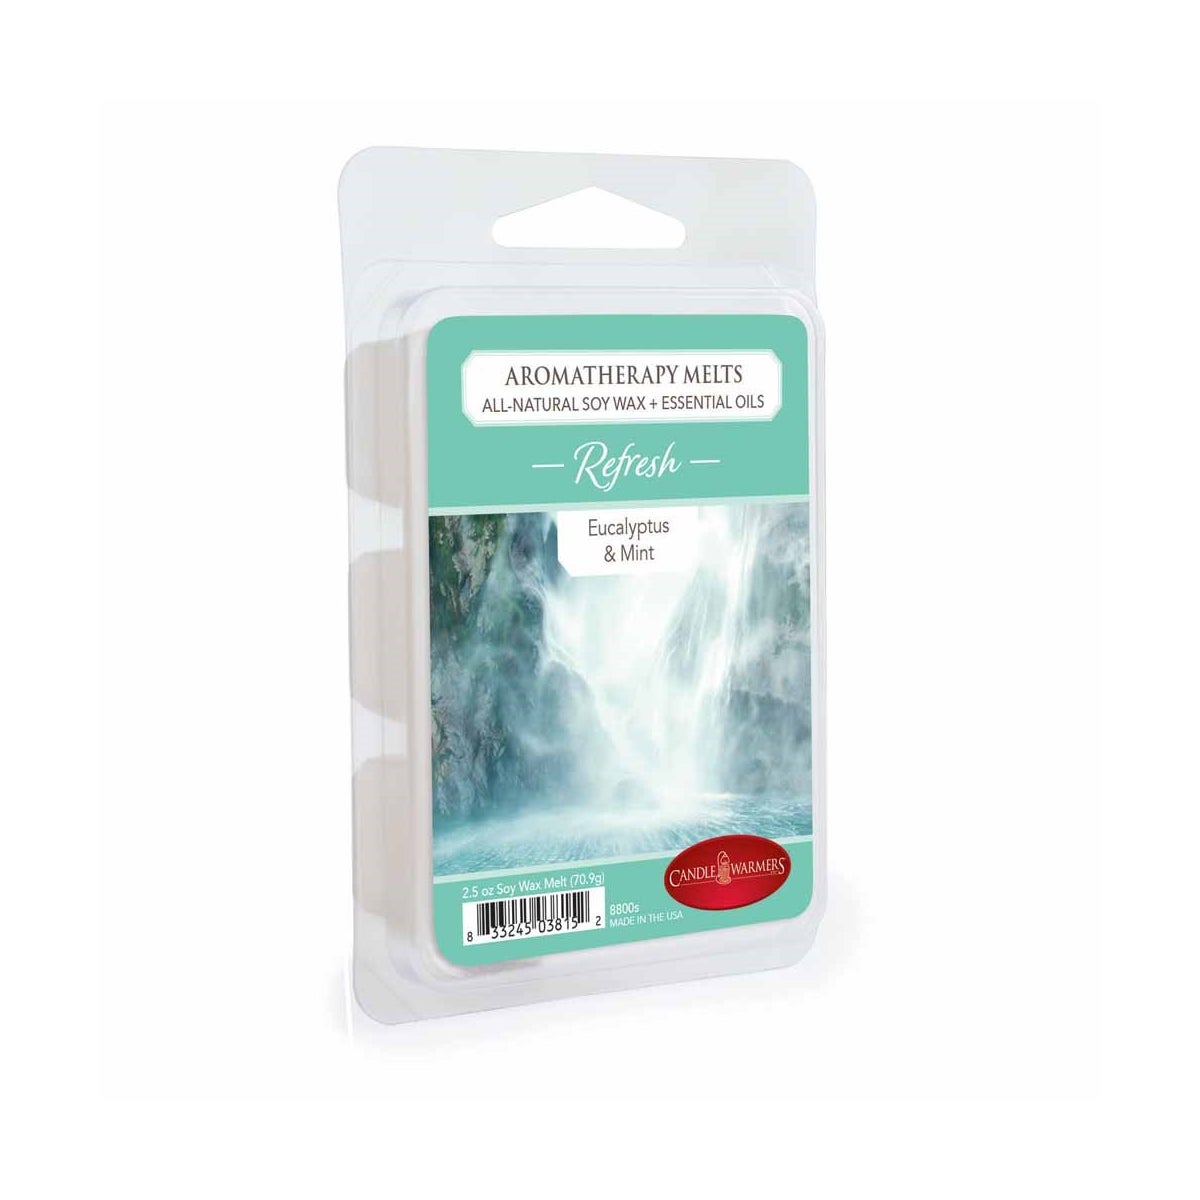 Aromatherapy Wax Melts 2.5 oz - Refresh